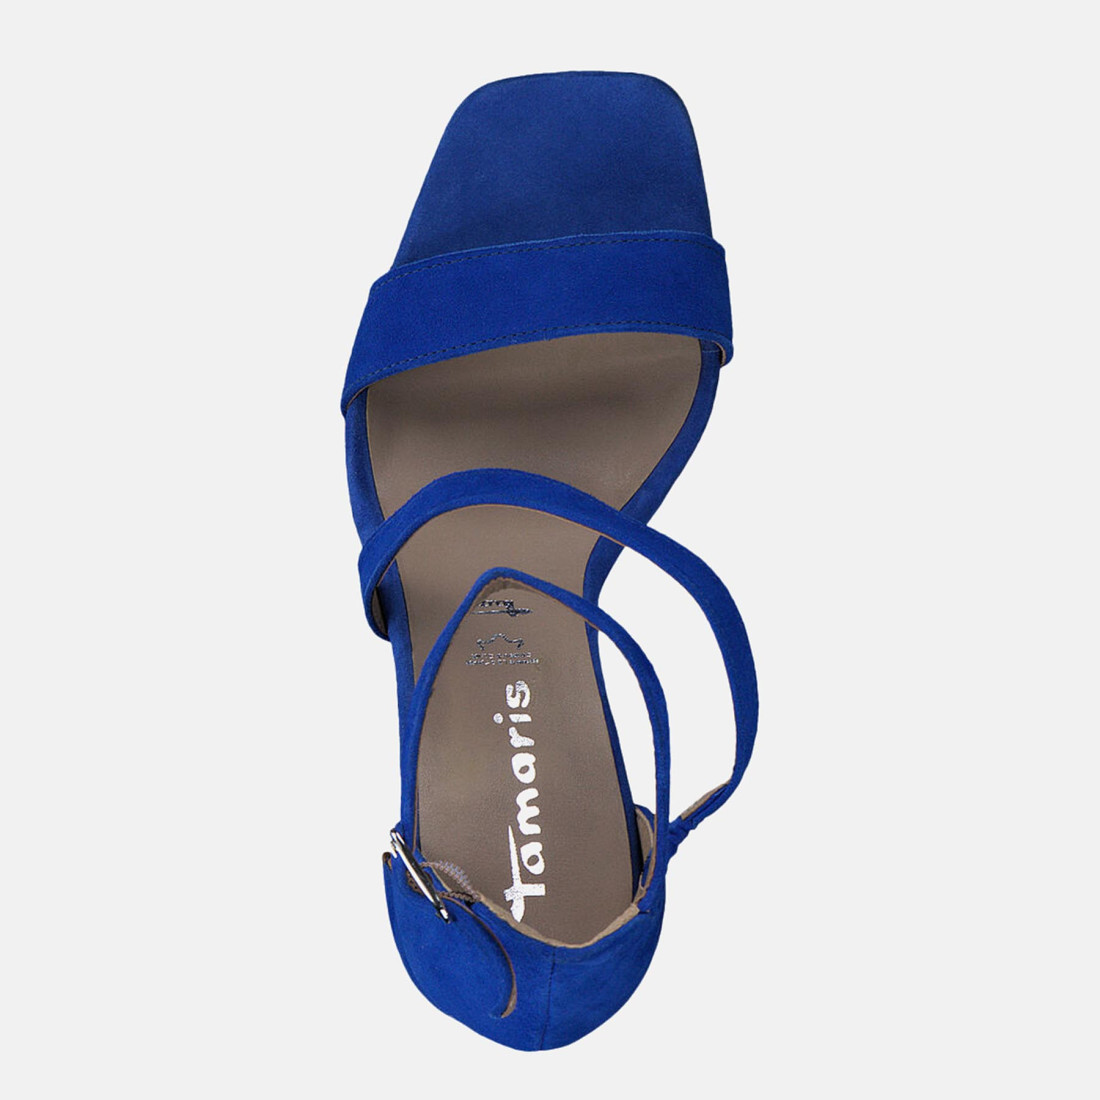 ideologi udgør stemme Elegant Tamaris sandal in royal blue suede with strap and high heel